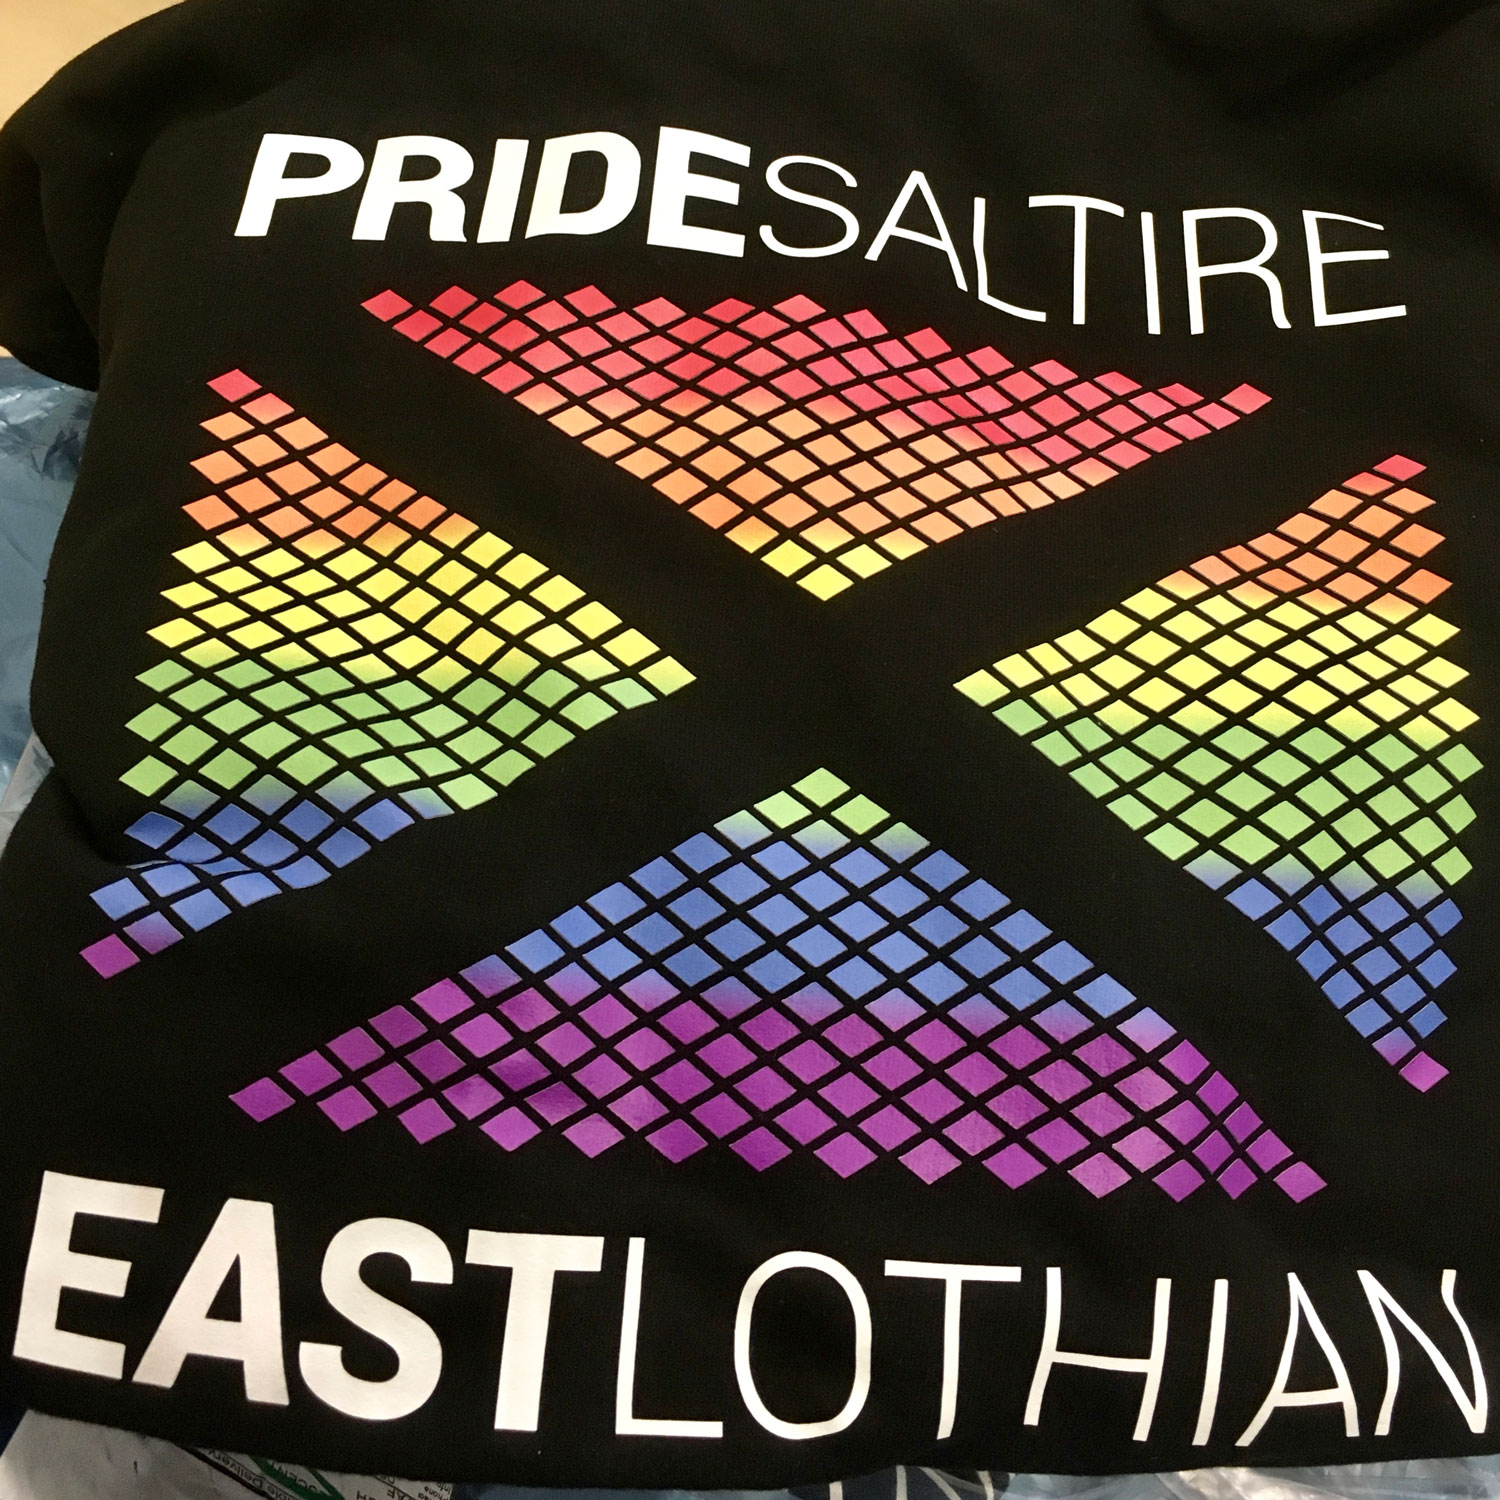 pride-saltire-east-lothian-branded-hoodies